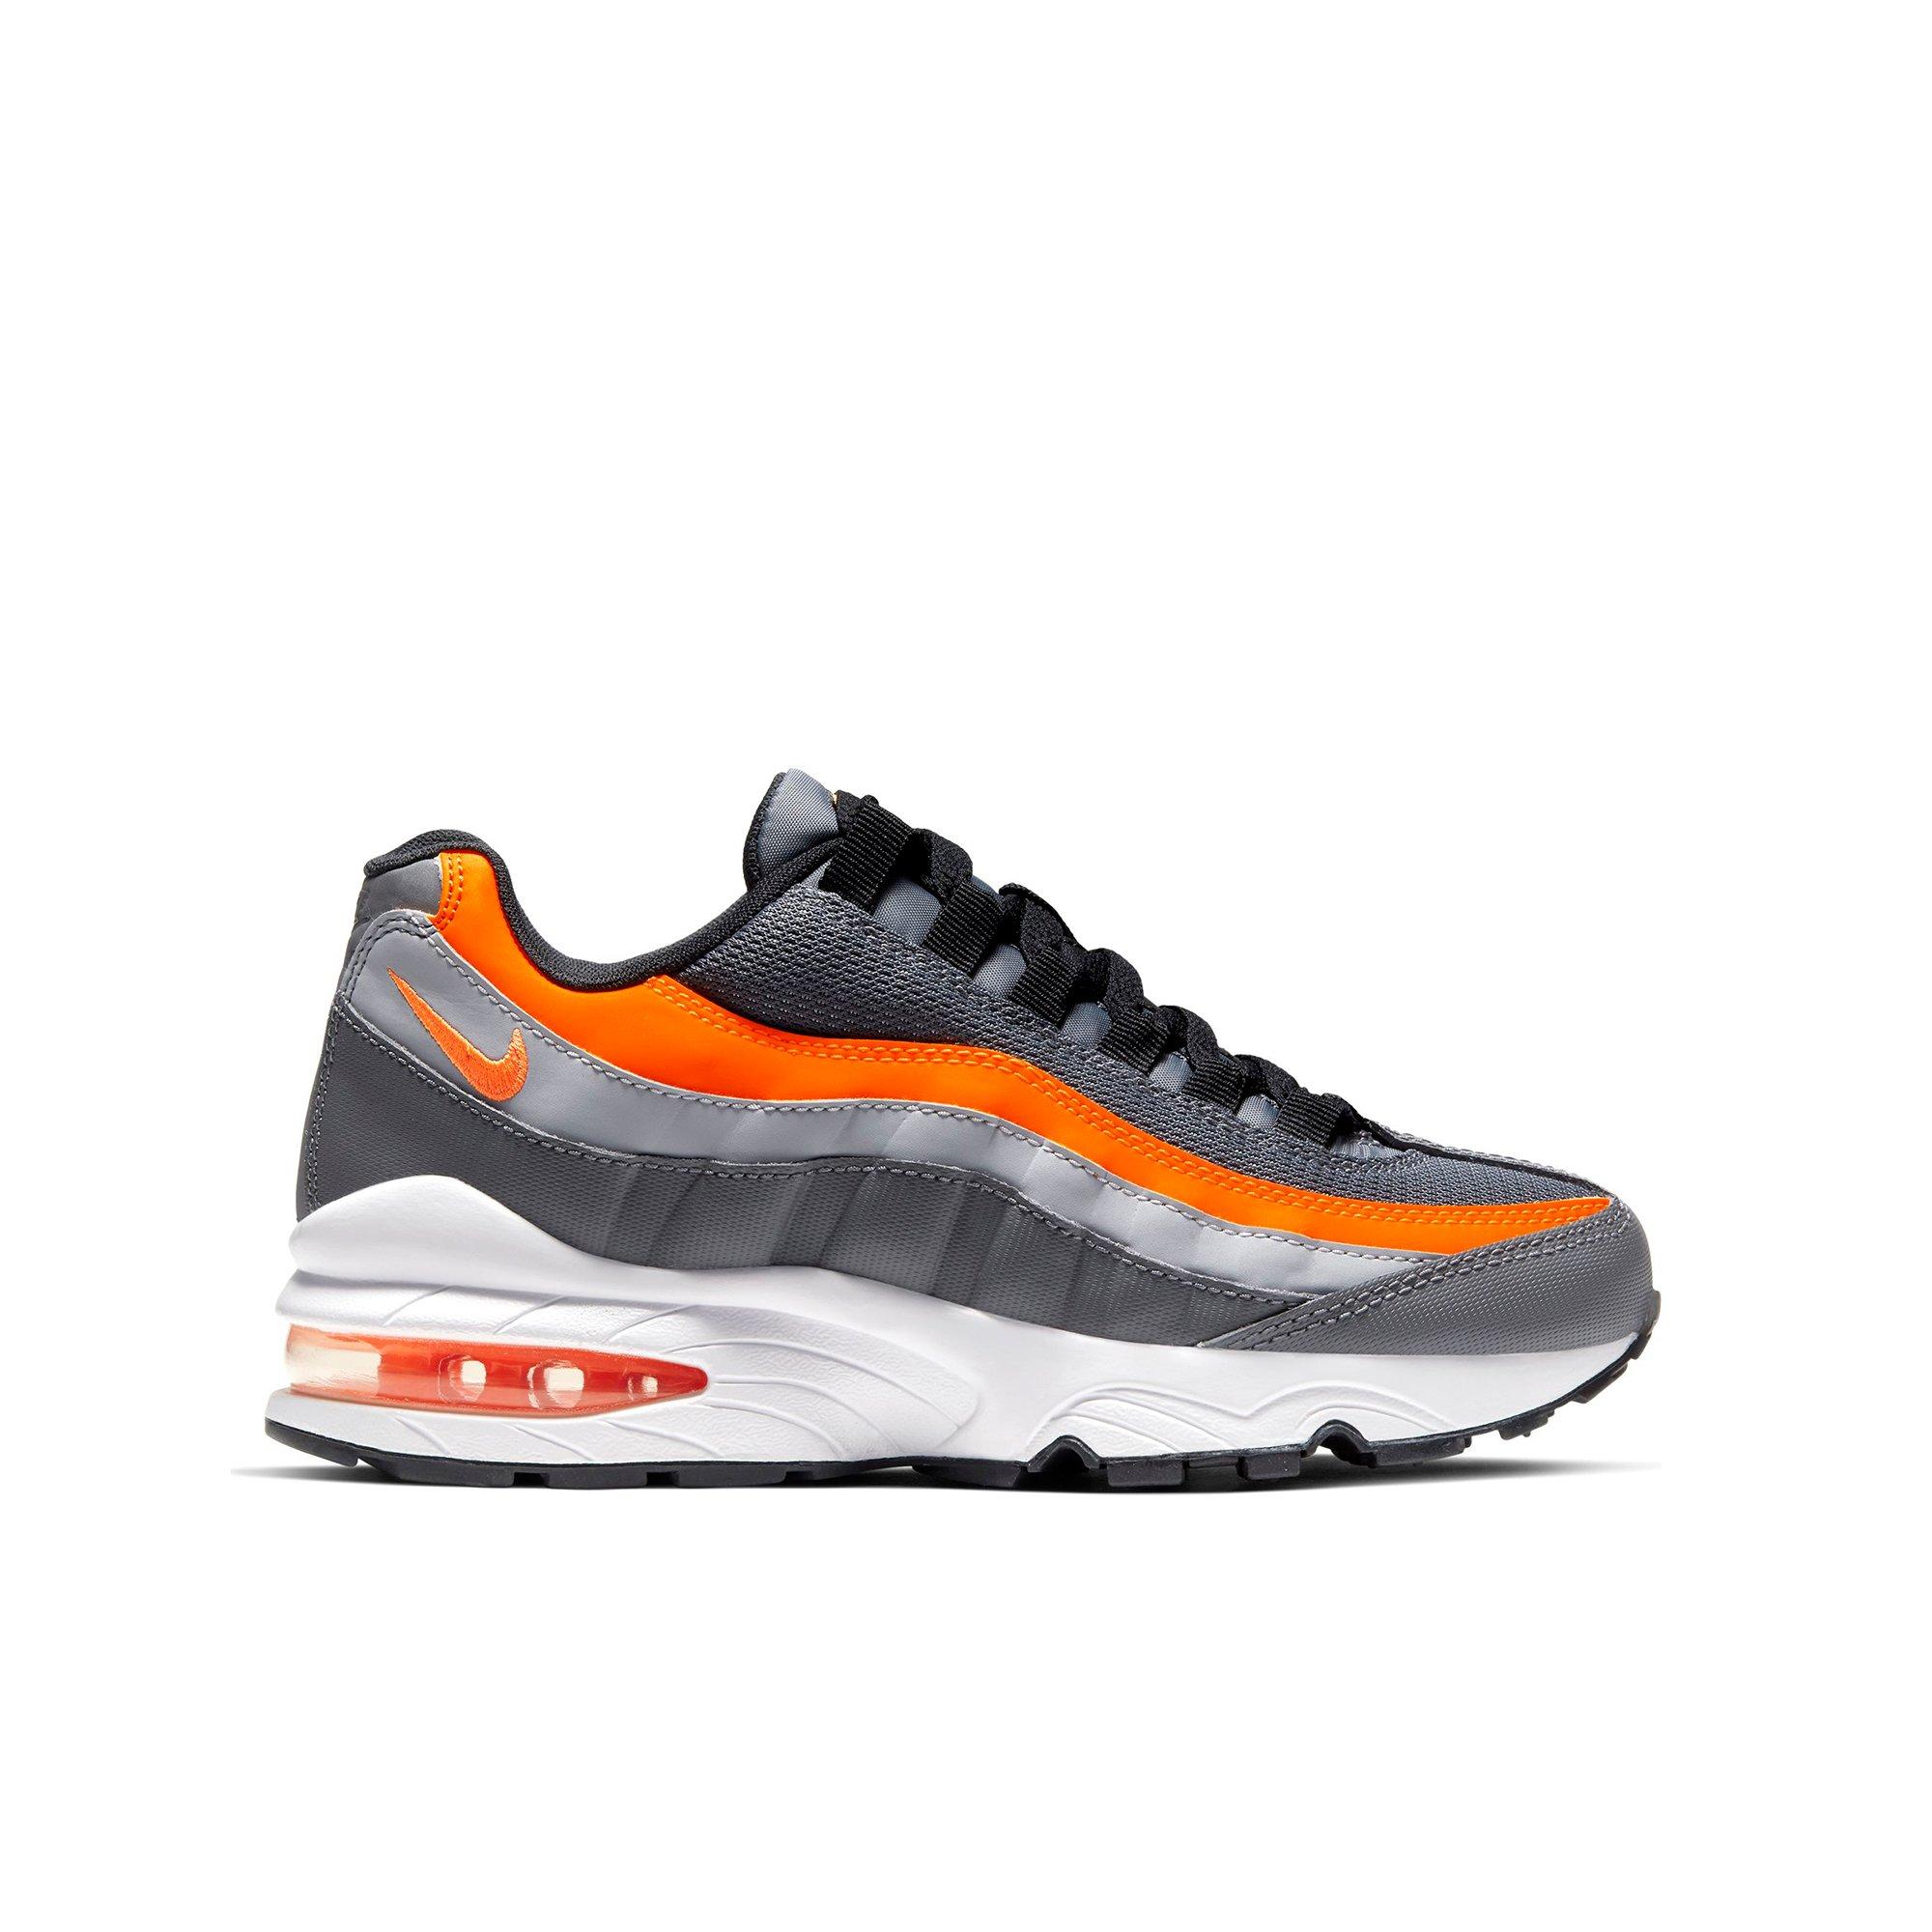 orange and grey air max 95